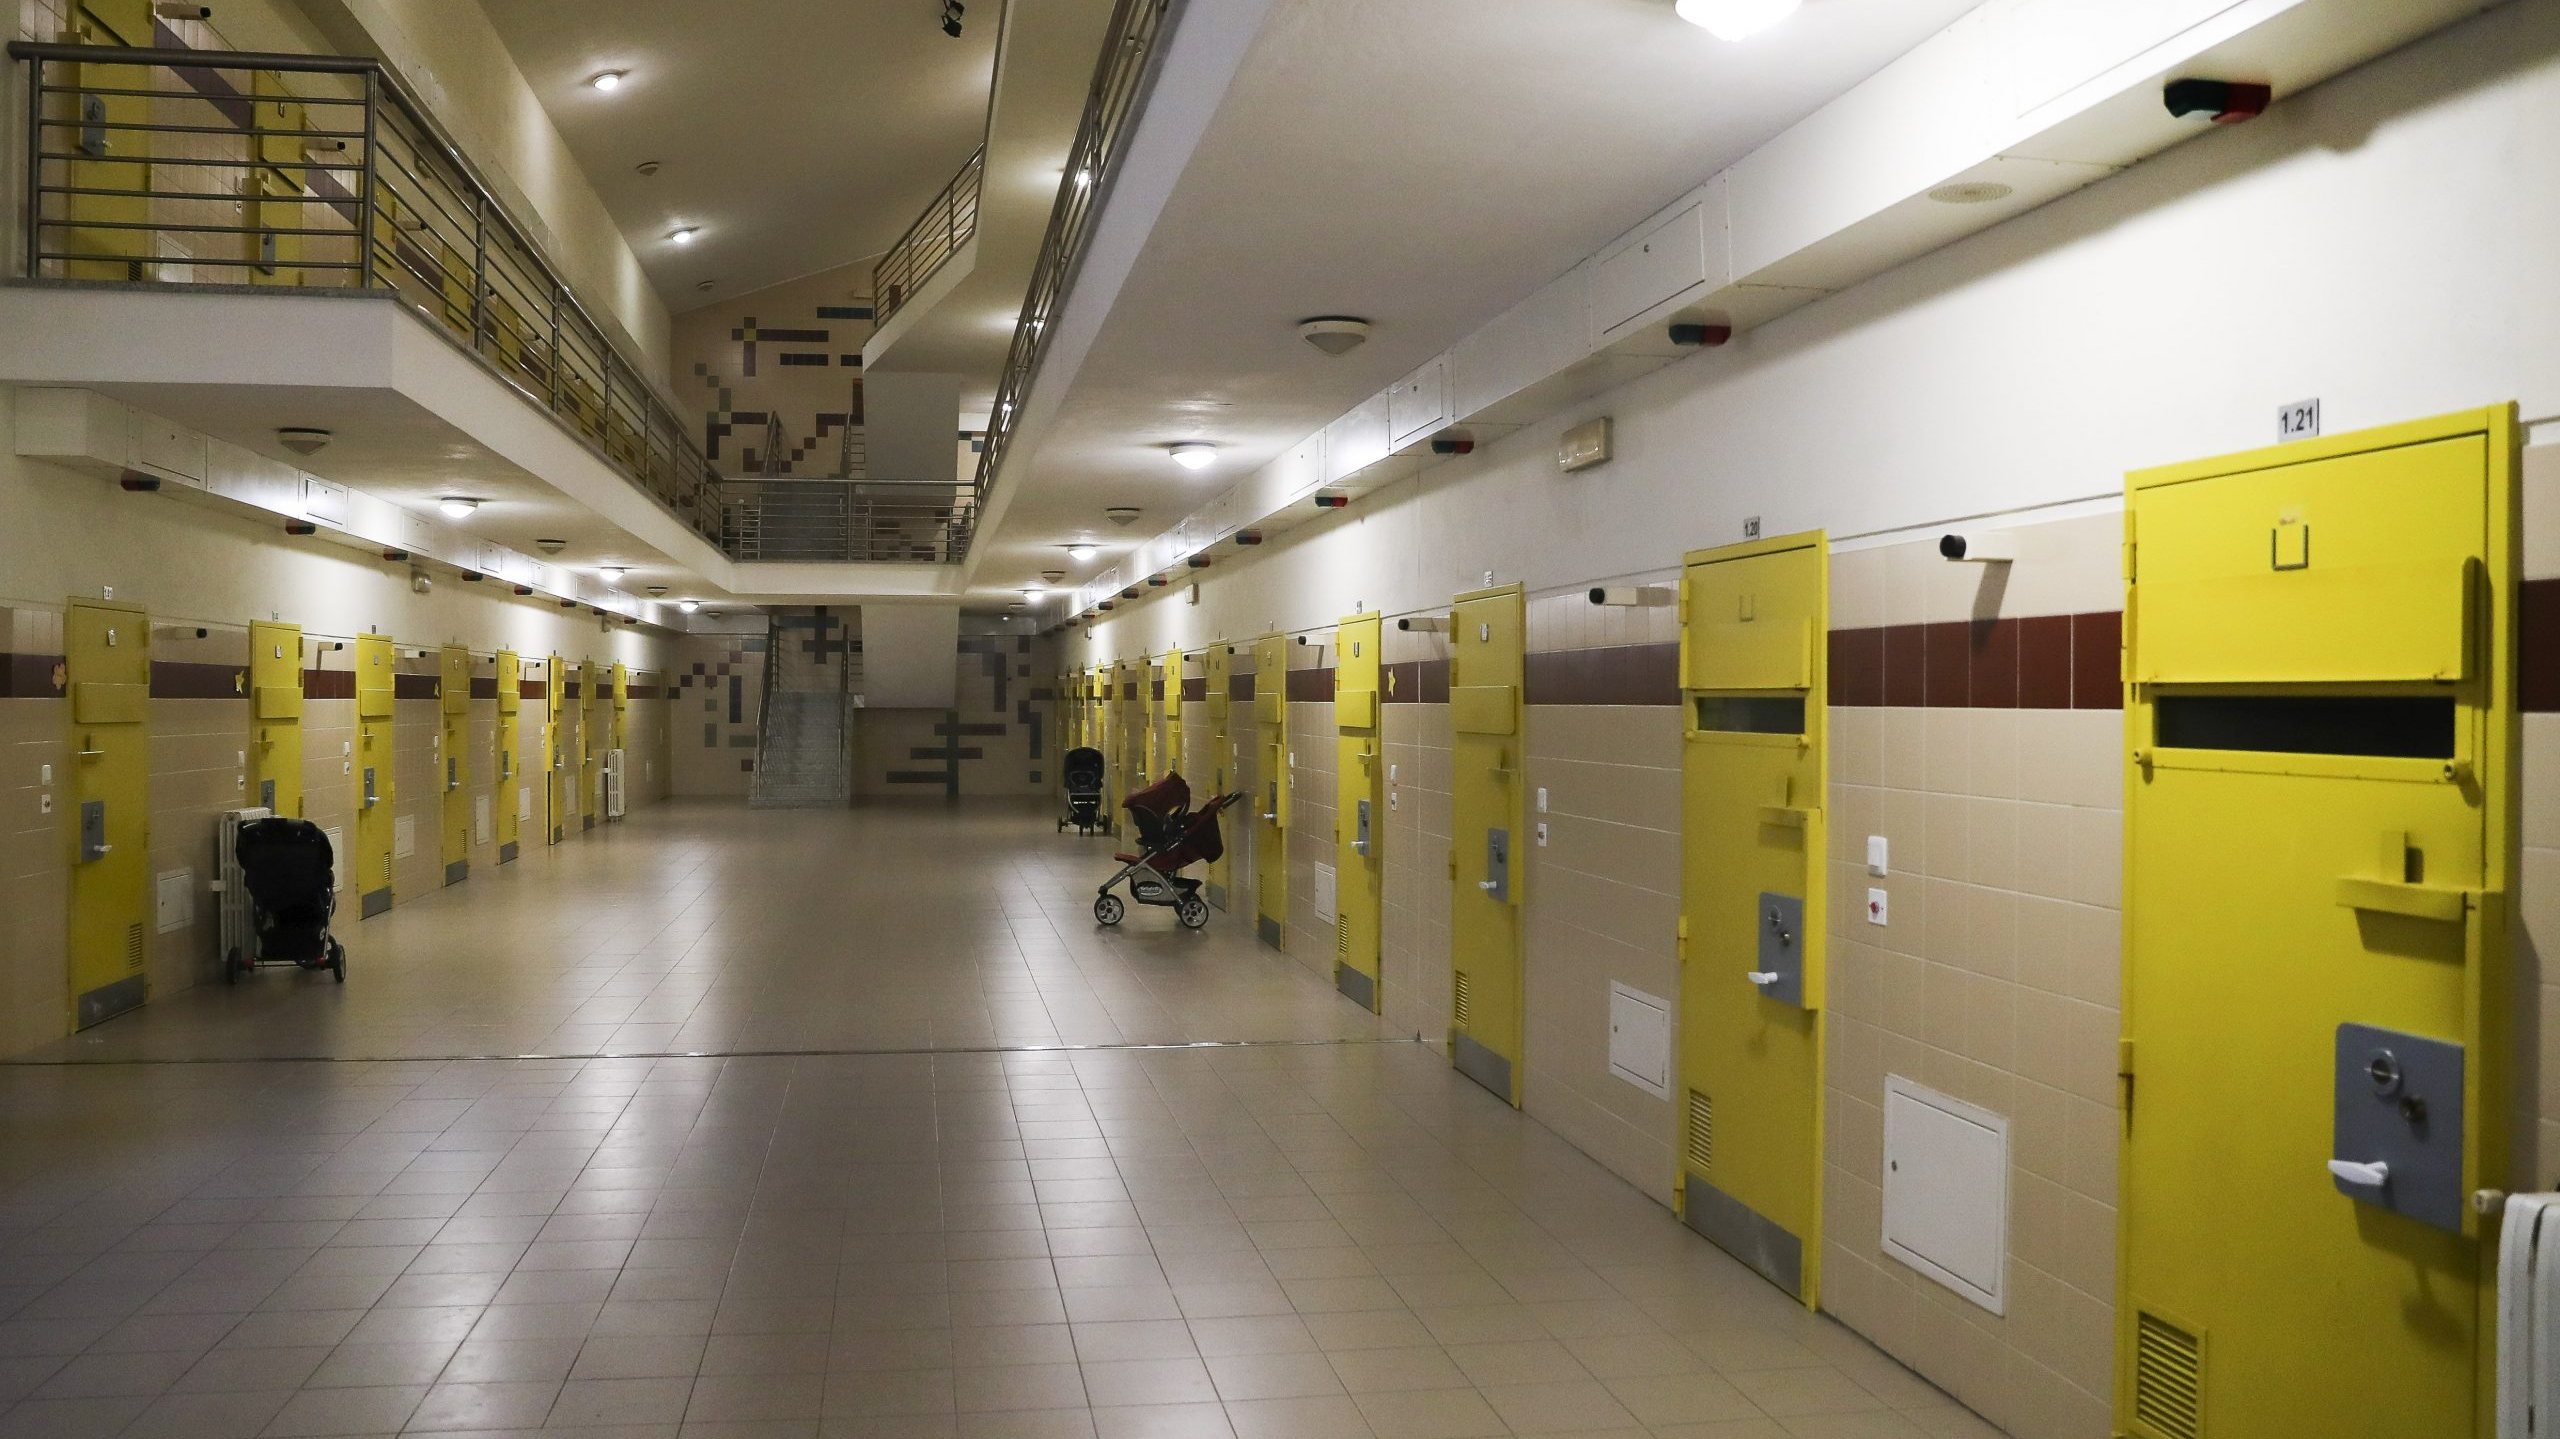 Estabelecimento prisional feminino de Santa Cruz do Bispoo, Matosinhos, 31 de janeiro de 2019. JOSÉ COELHO/LUSA